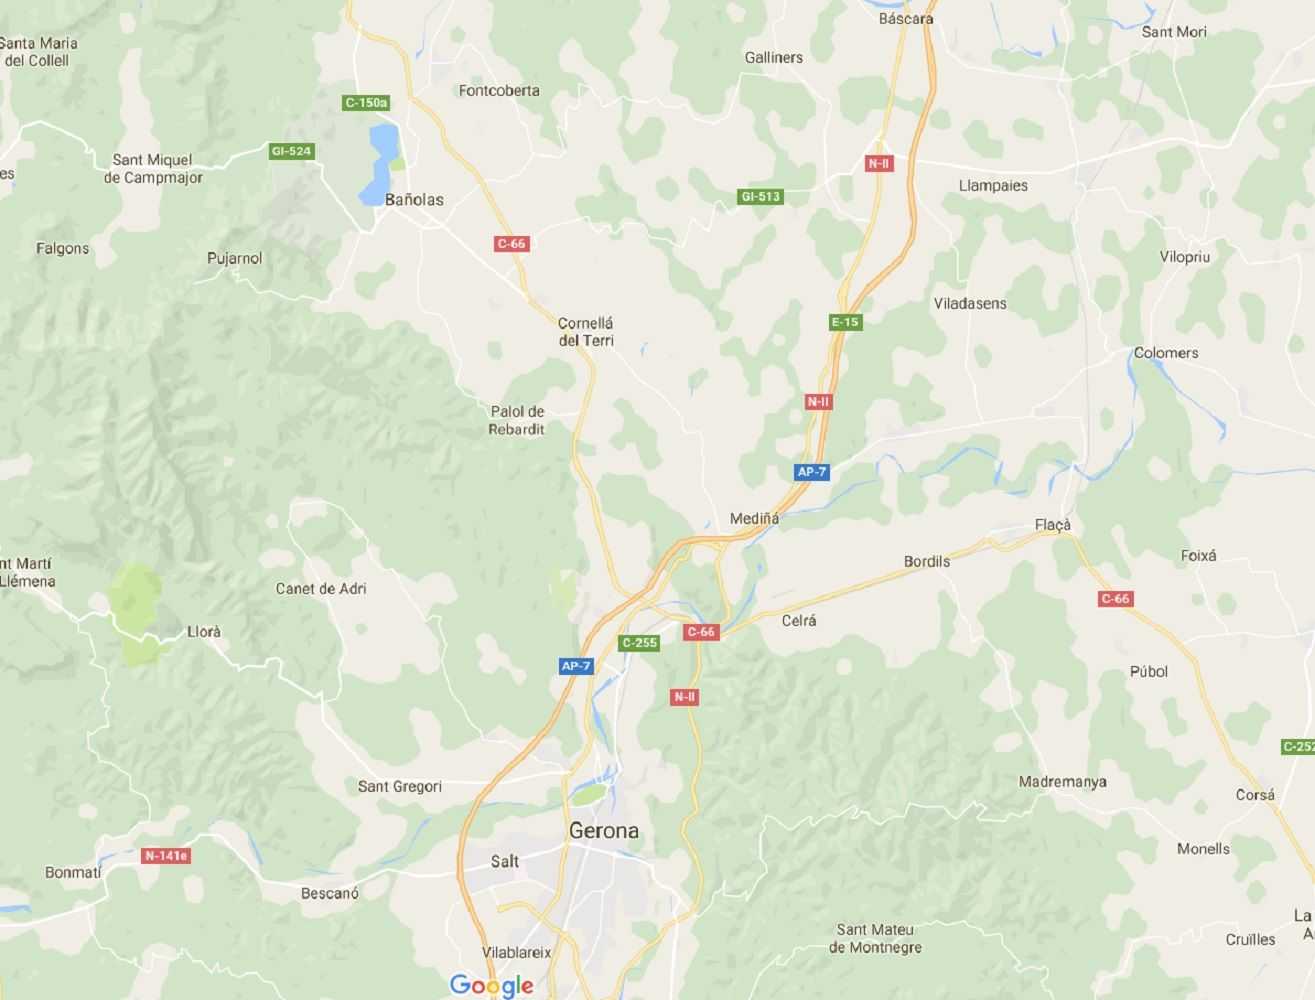 Google Maps castellaniza los topónimos catalanes